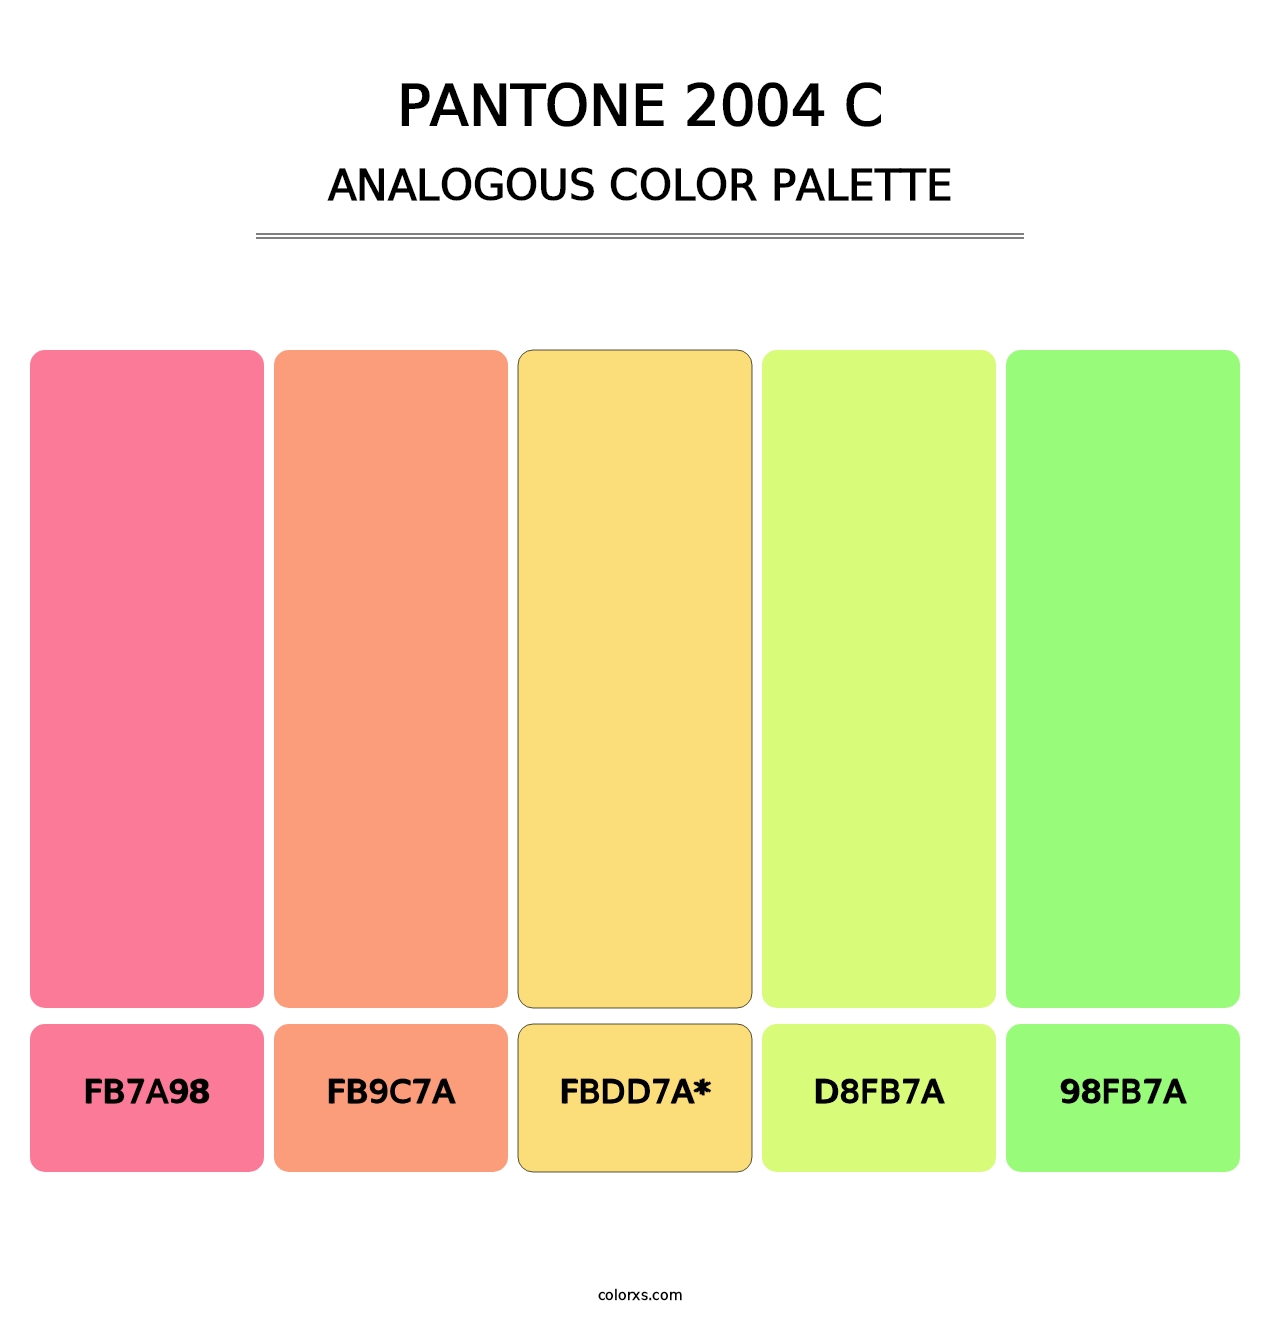 PANTONE 2004 C - Analogous Color Palette